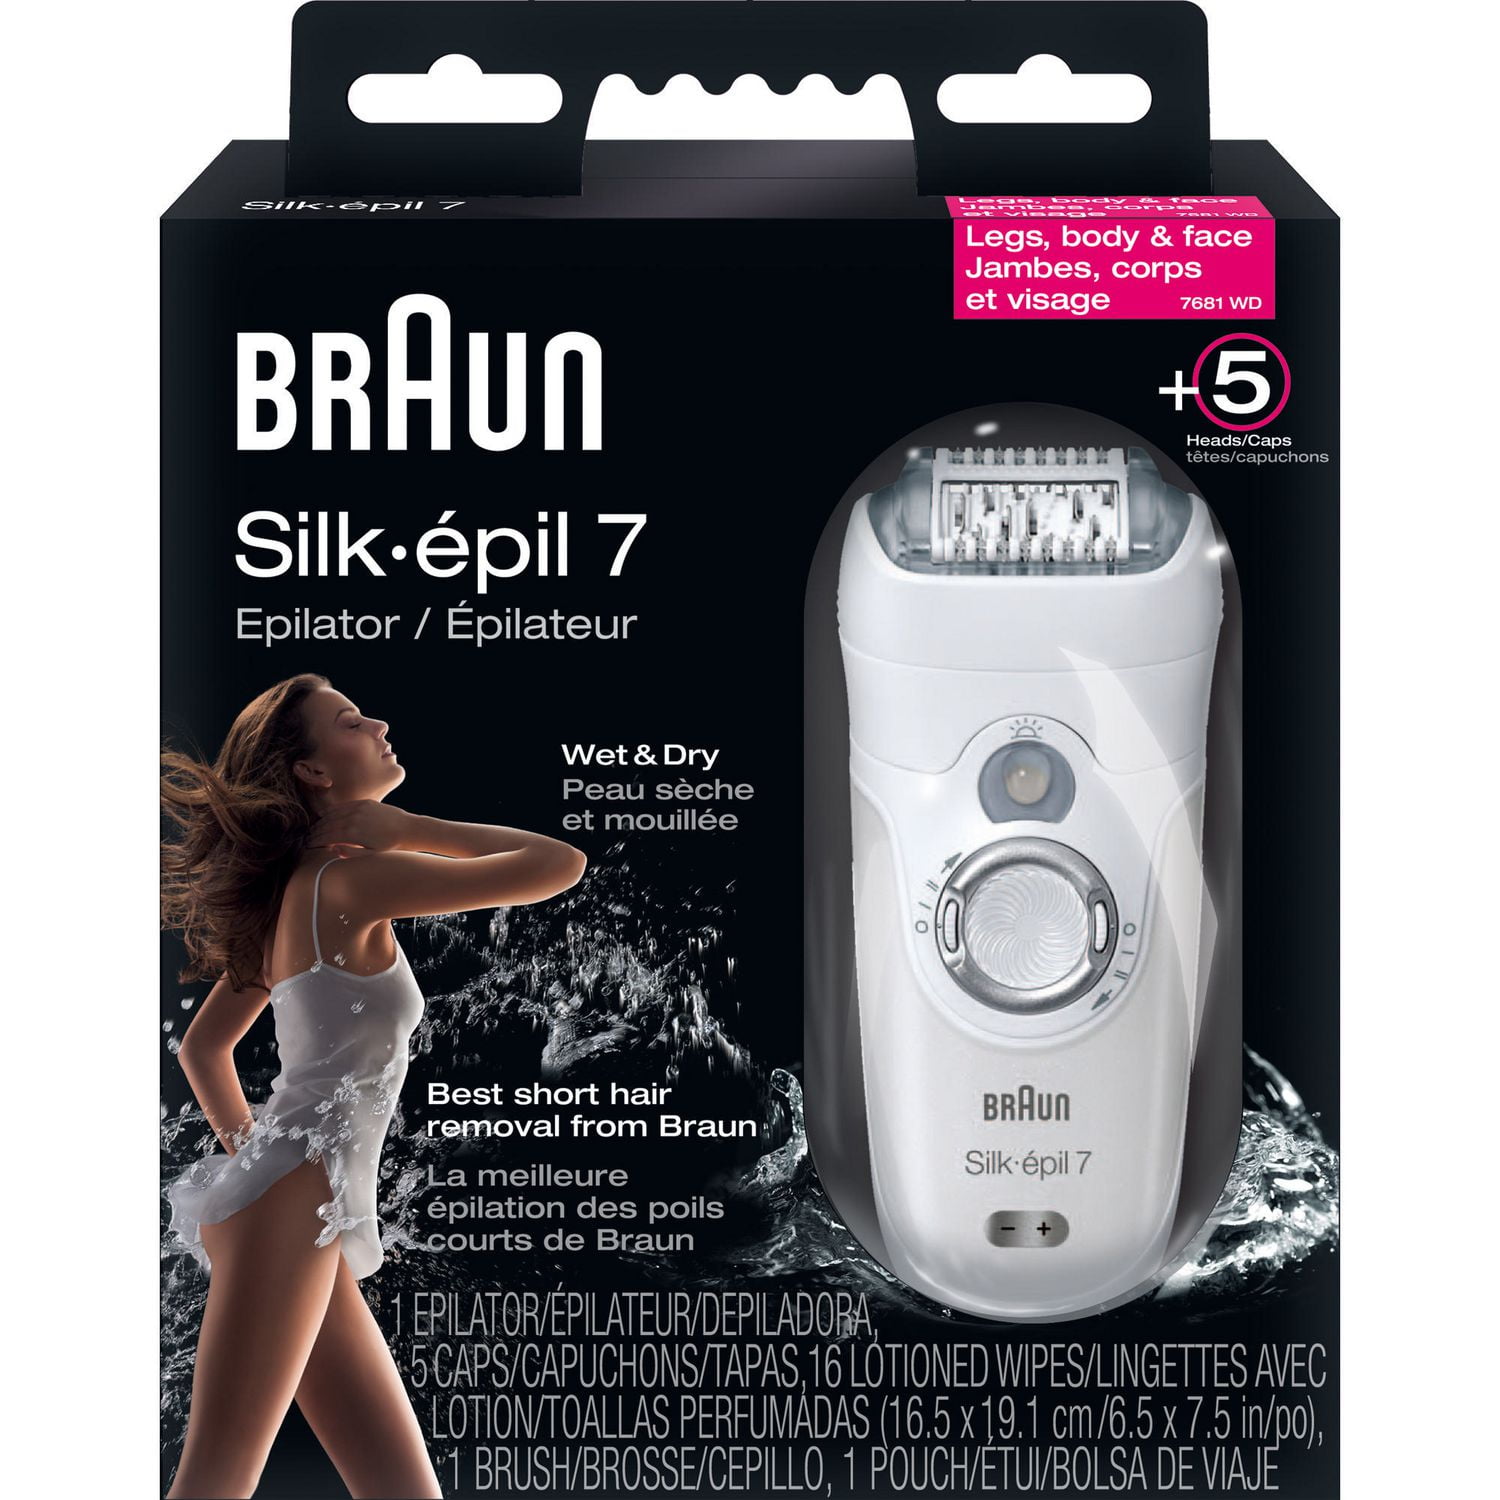 Braun Silk-épil 7 7-561 Wet & Dry epilator with 8 extras incl